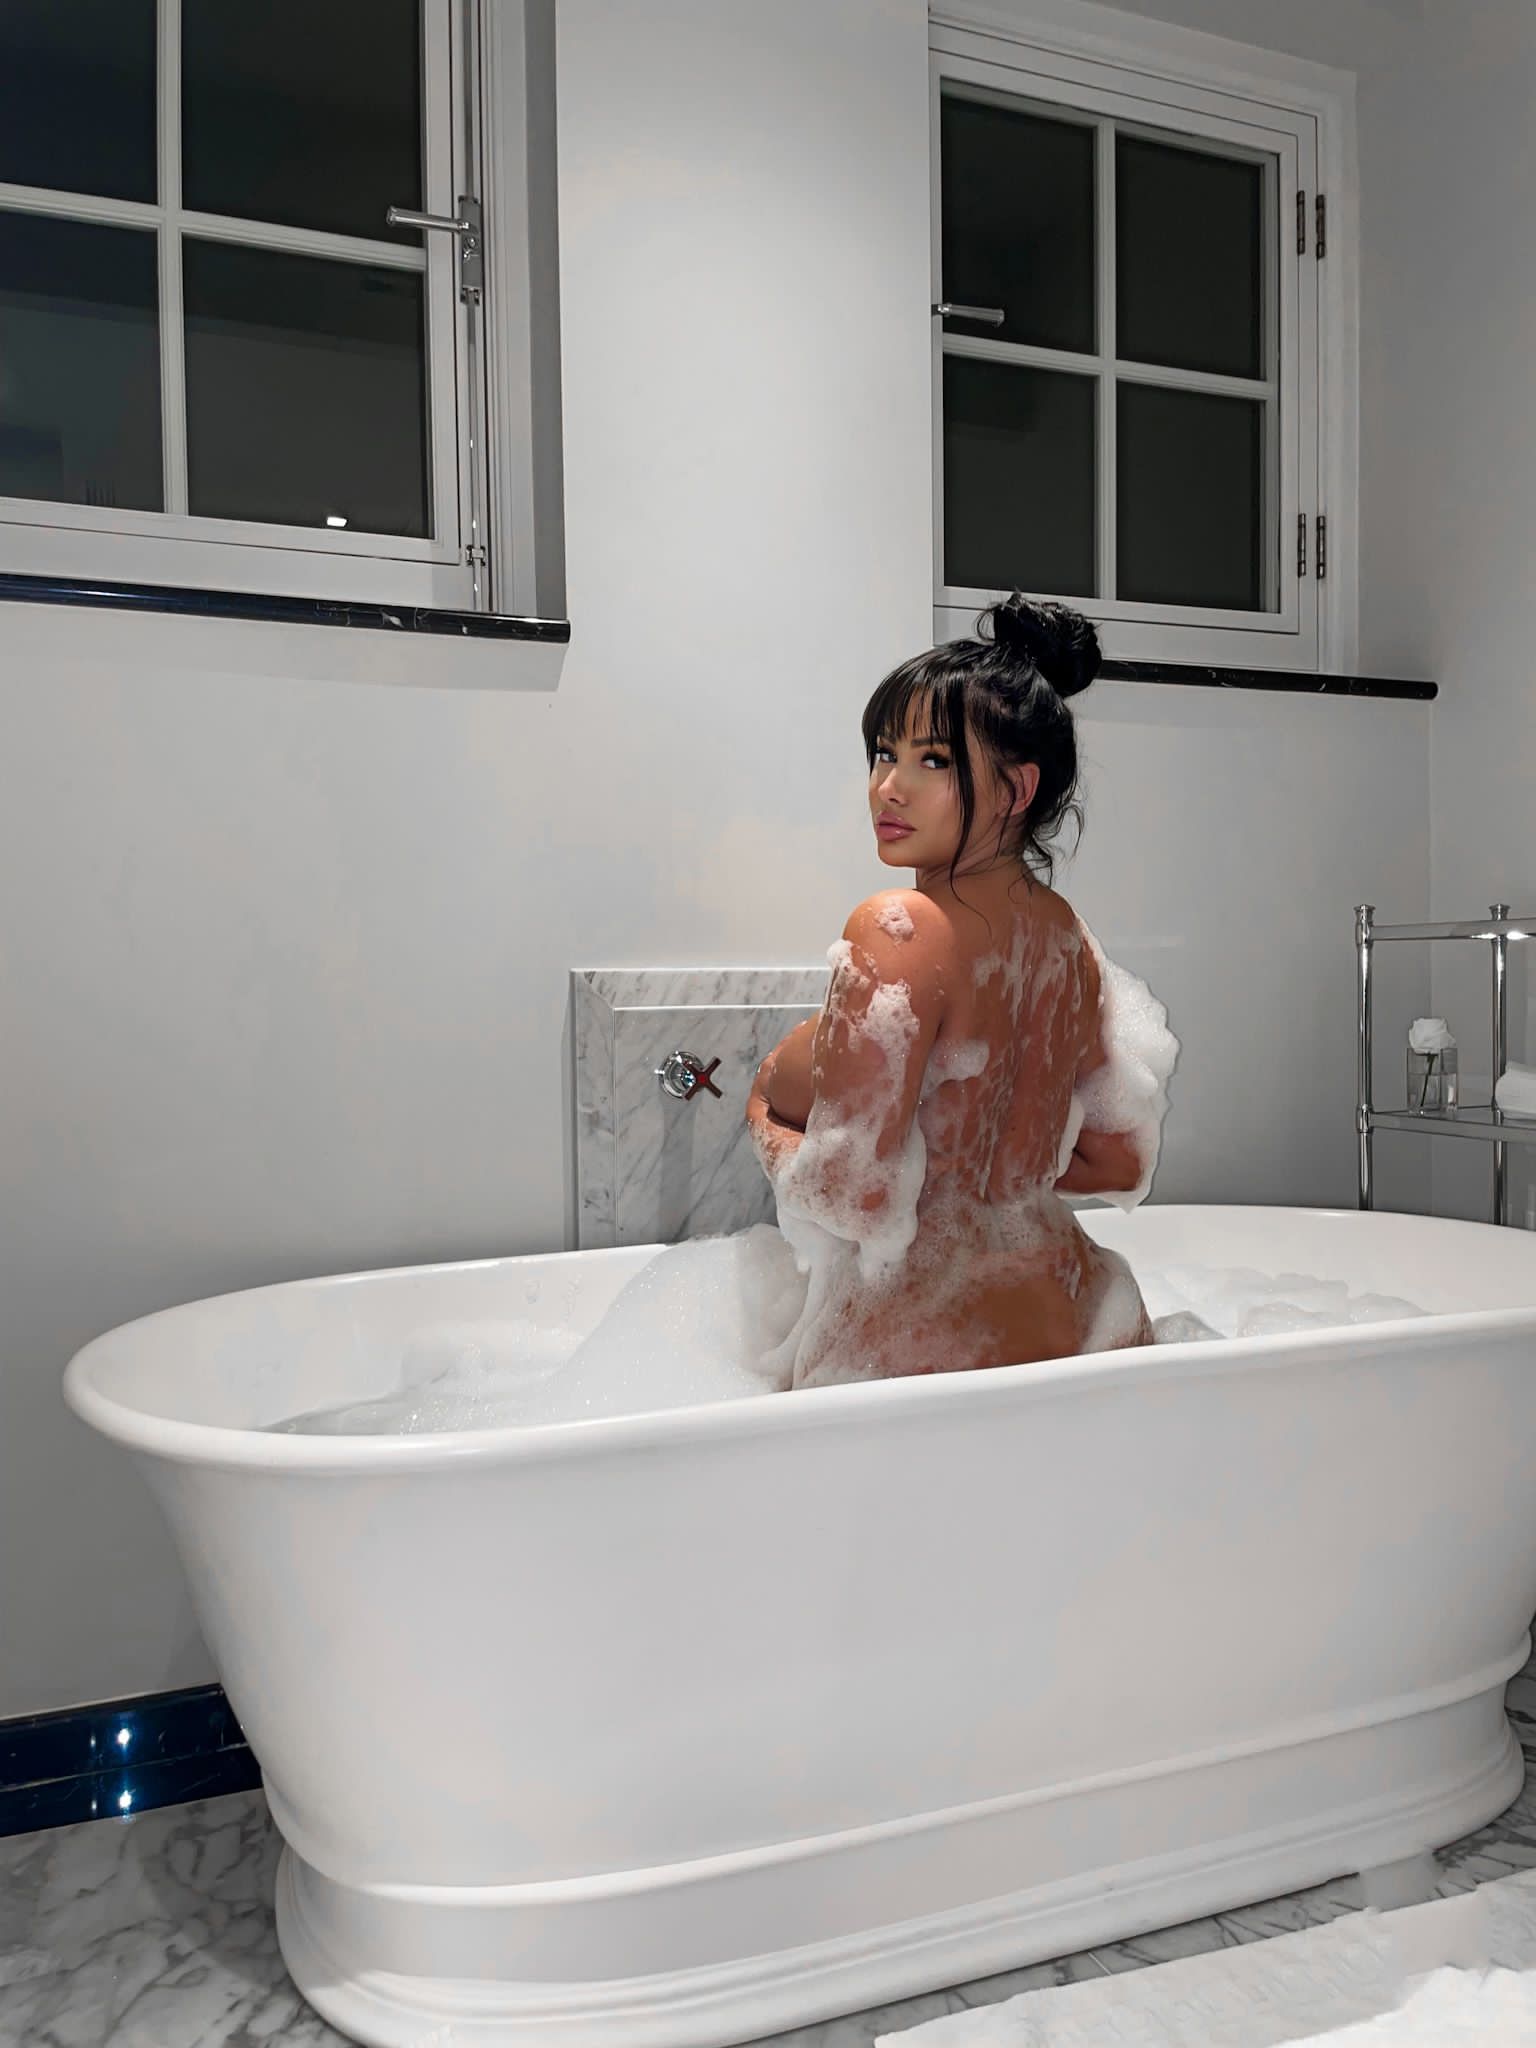 Kara Lina naked in a bath-tub, looking back at you 